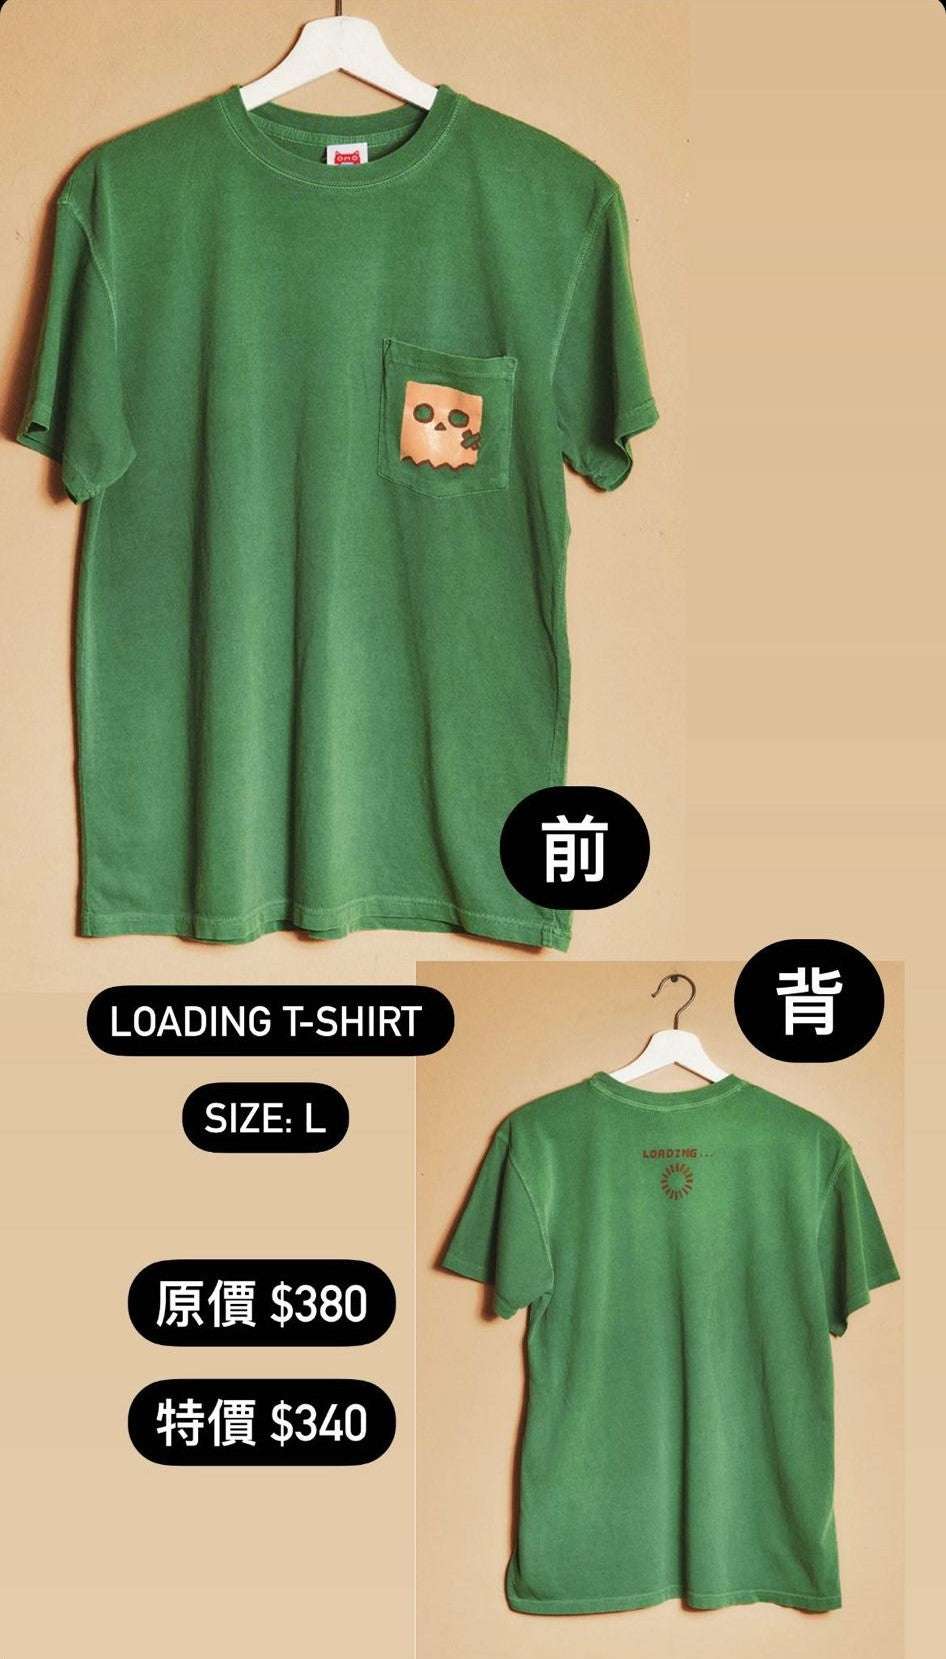 「現貨」Hololive EX x Omocat 衣服周邊 - Loading T-shirt